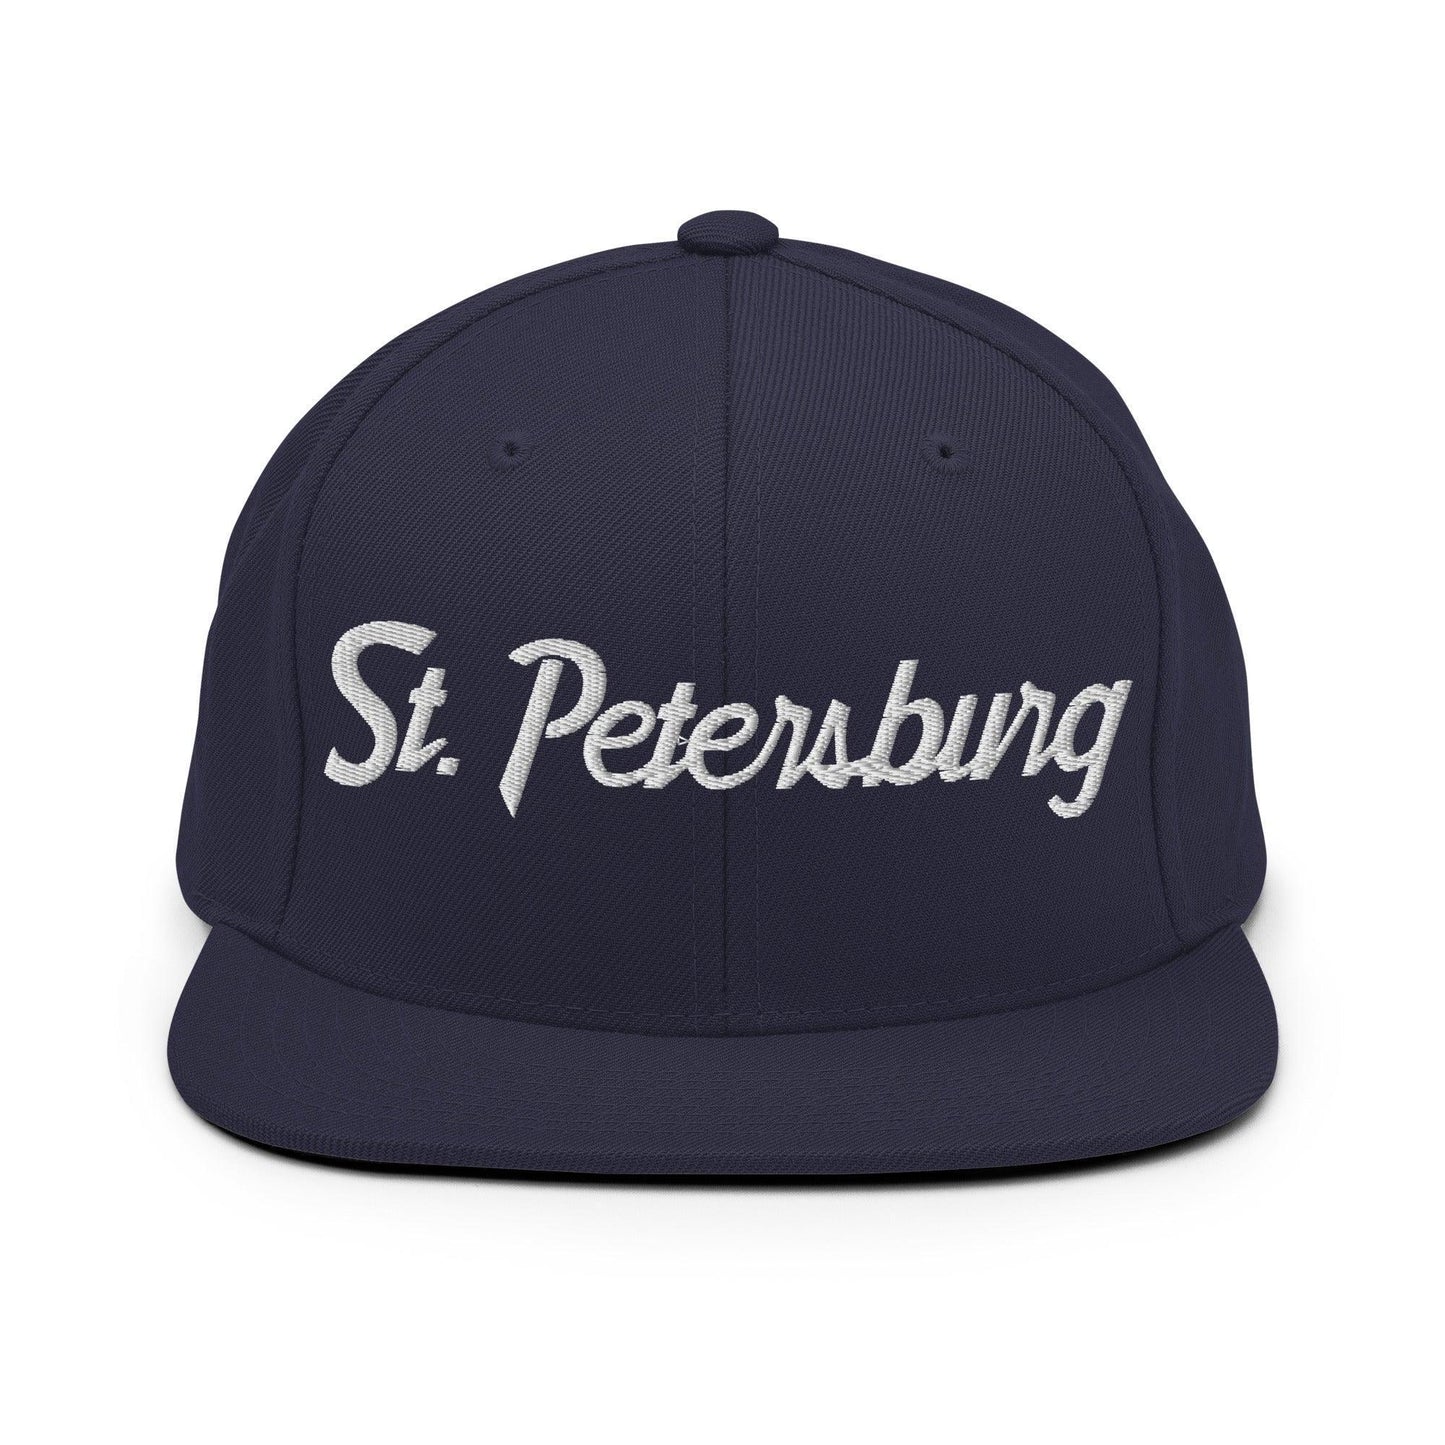 St. Petersburg Script Snapback Hat Navy